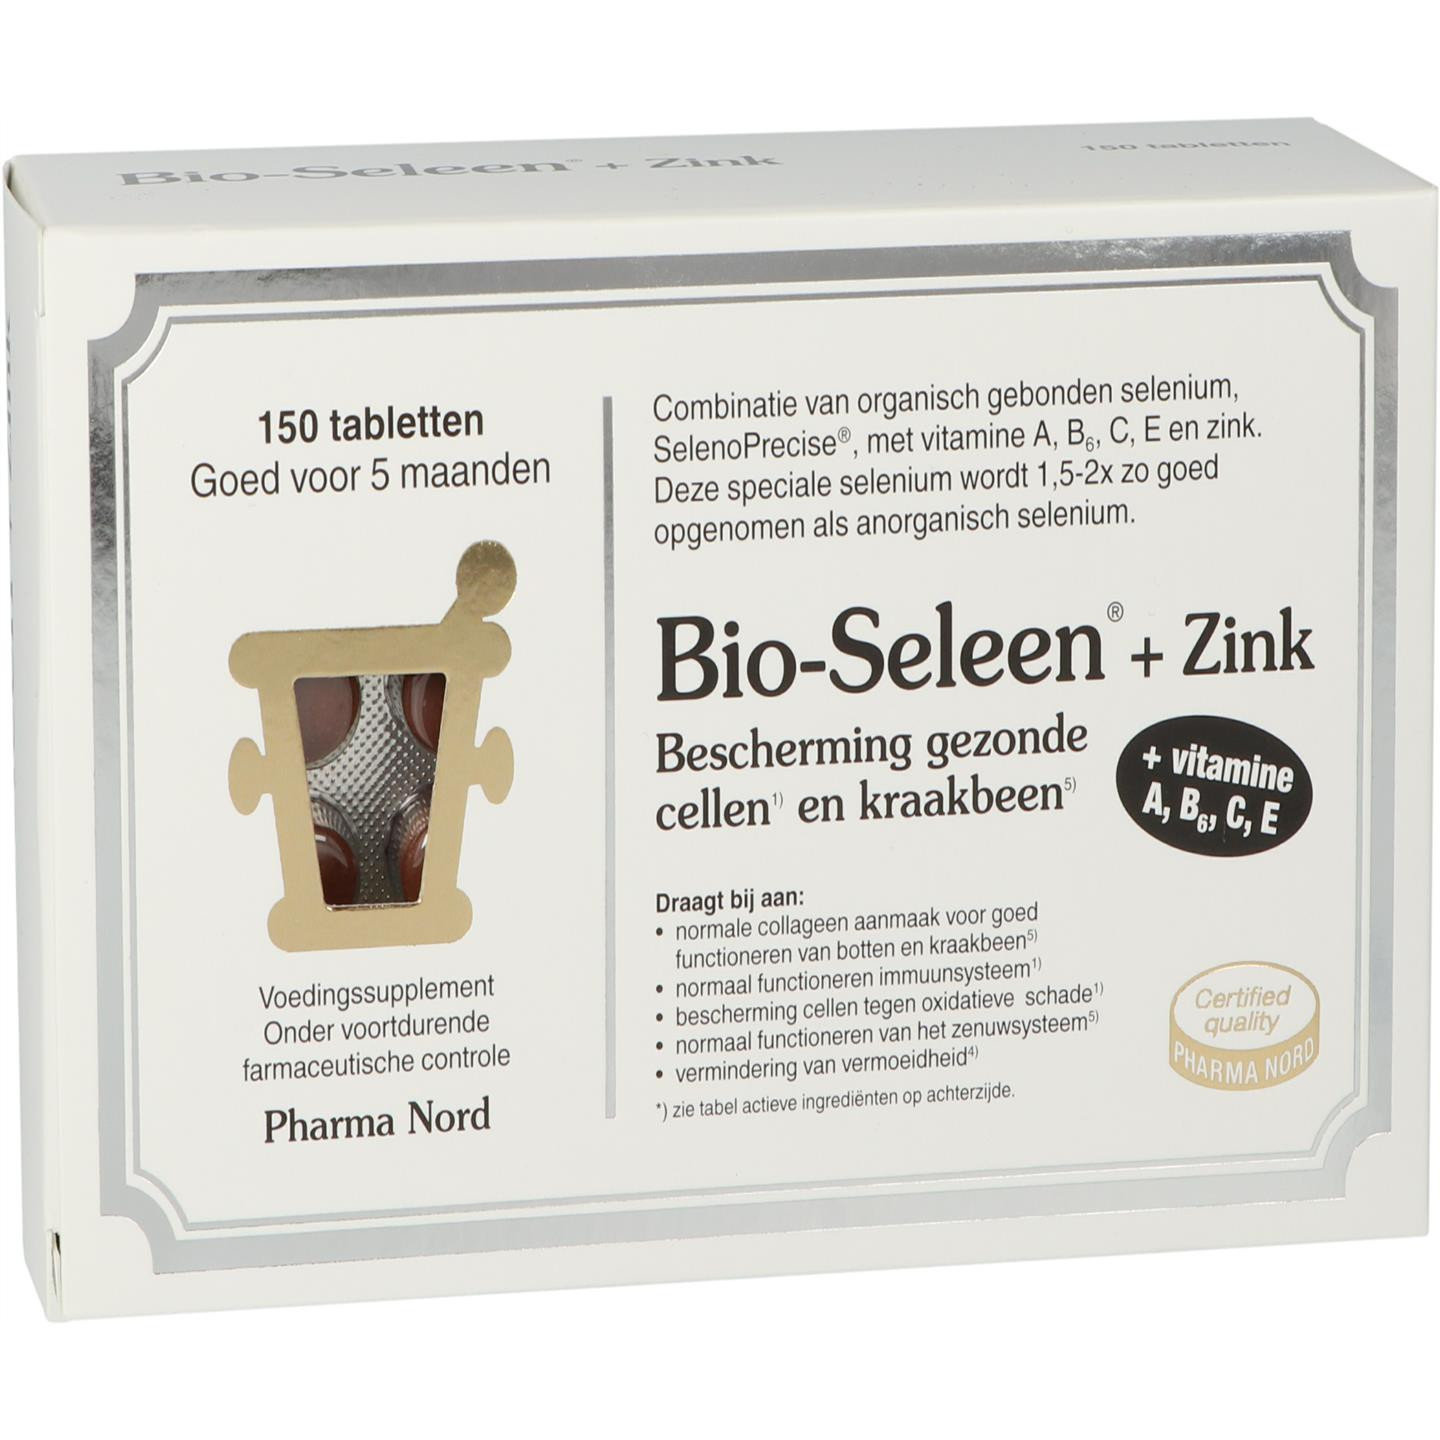 Bio-Seleen + Zink